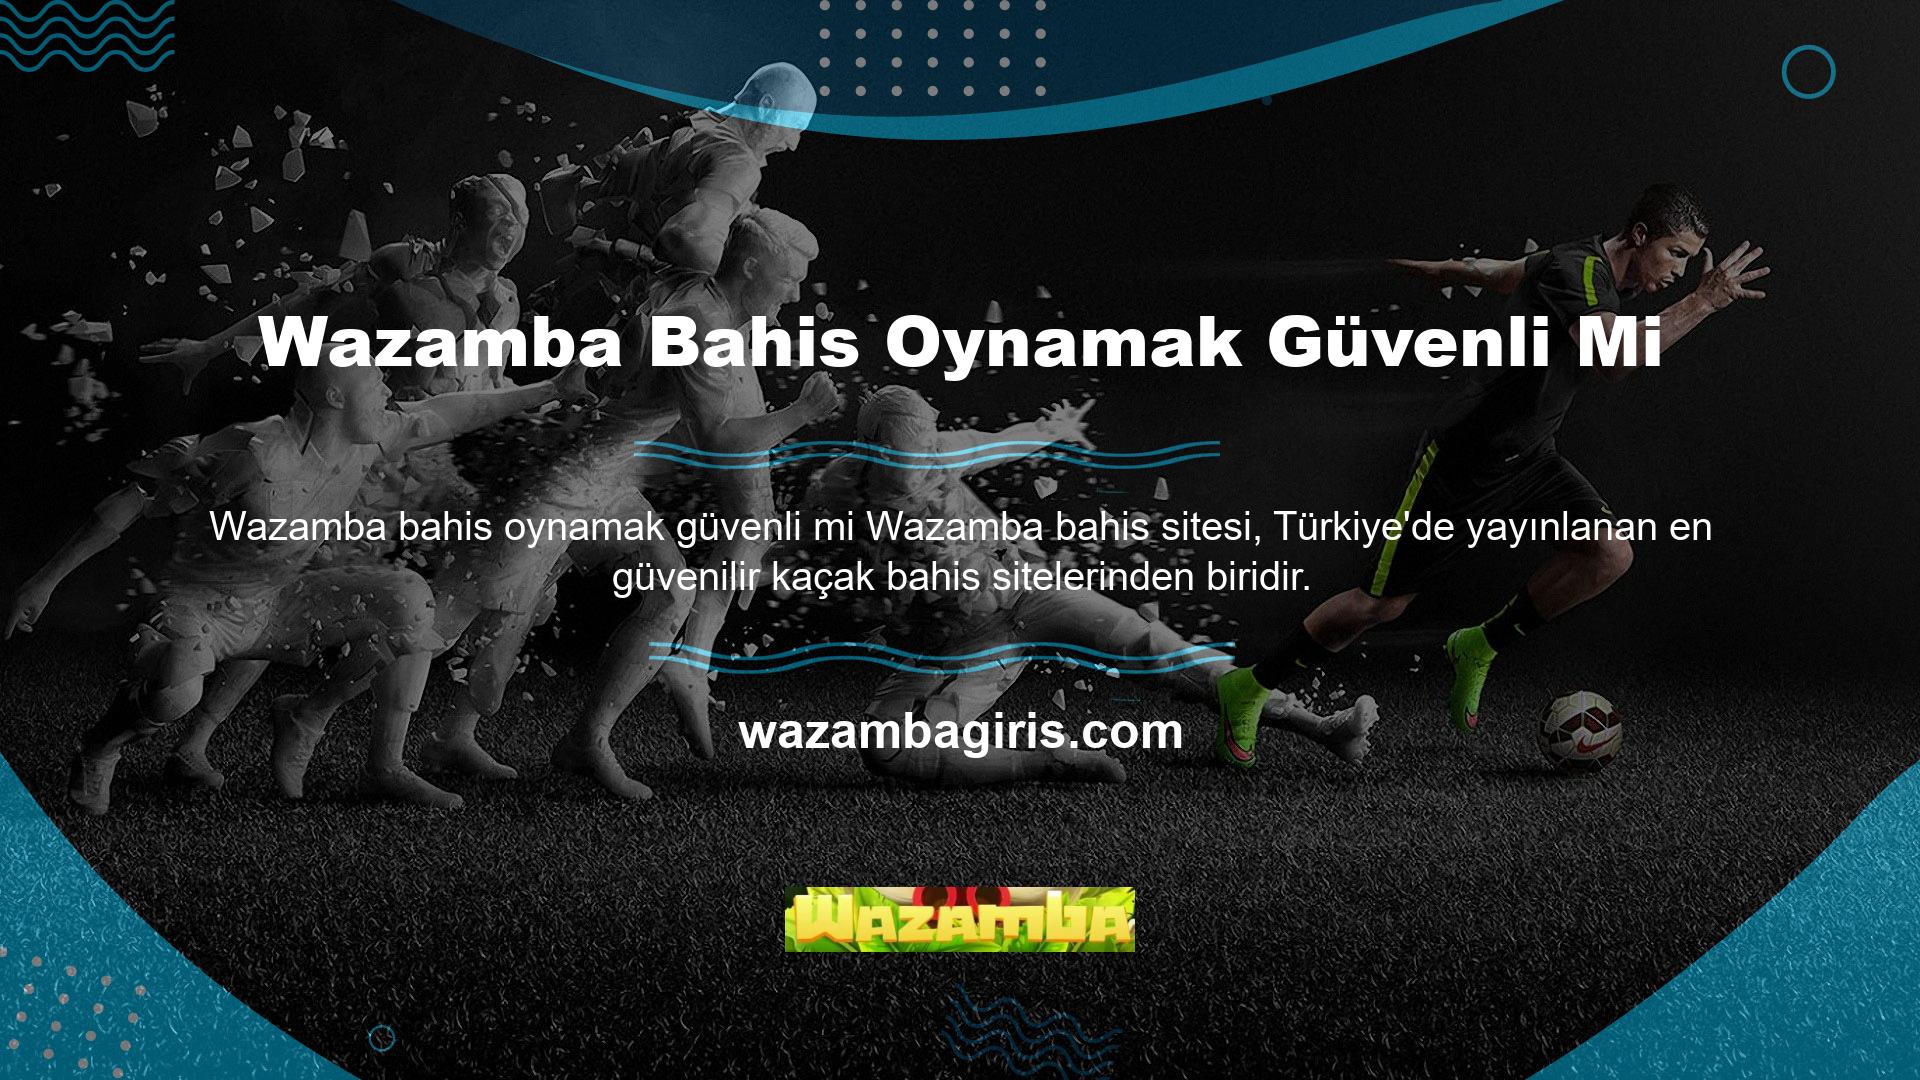 Wazamba, lisanslı yazılım ve içerik için en popüler Wazamba web sitelerinden biridir ve Avrupa'nın en saygın lisanslama şirketlerinden lisanslanmıştır